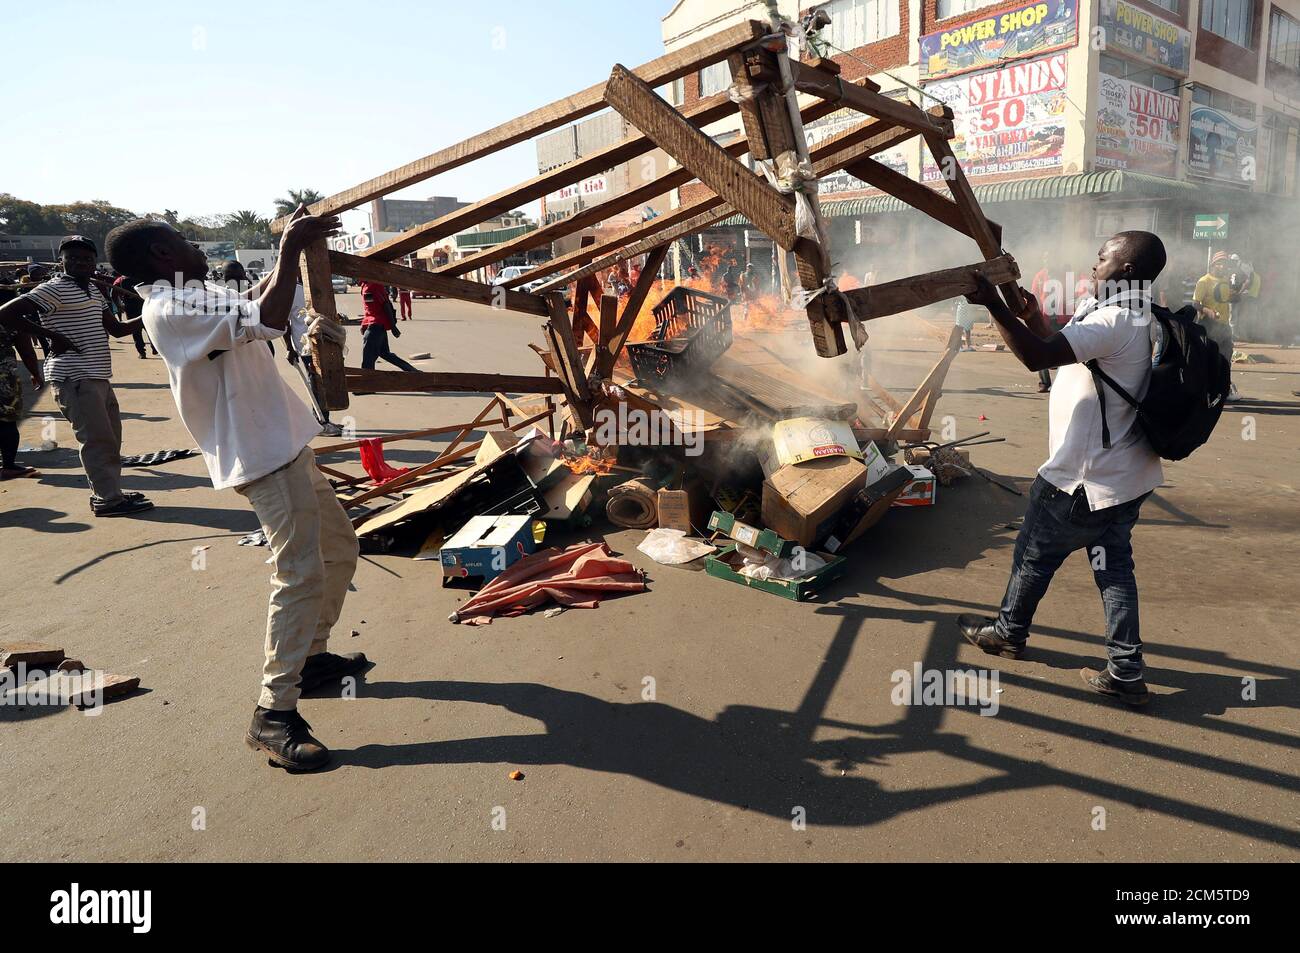 Les manifestants ont incendié des palettes en bois et des ordures en attendant les résultats des élections à Harare, Zimbabwe, le 1er août 2018. REUTERS/Mike Hutchings Banque D'Images